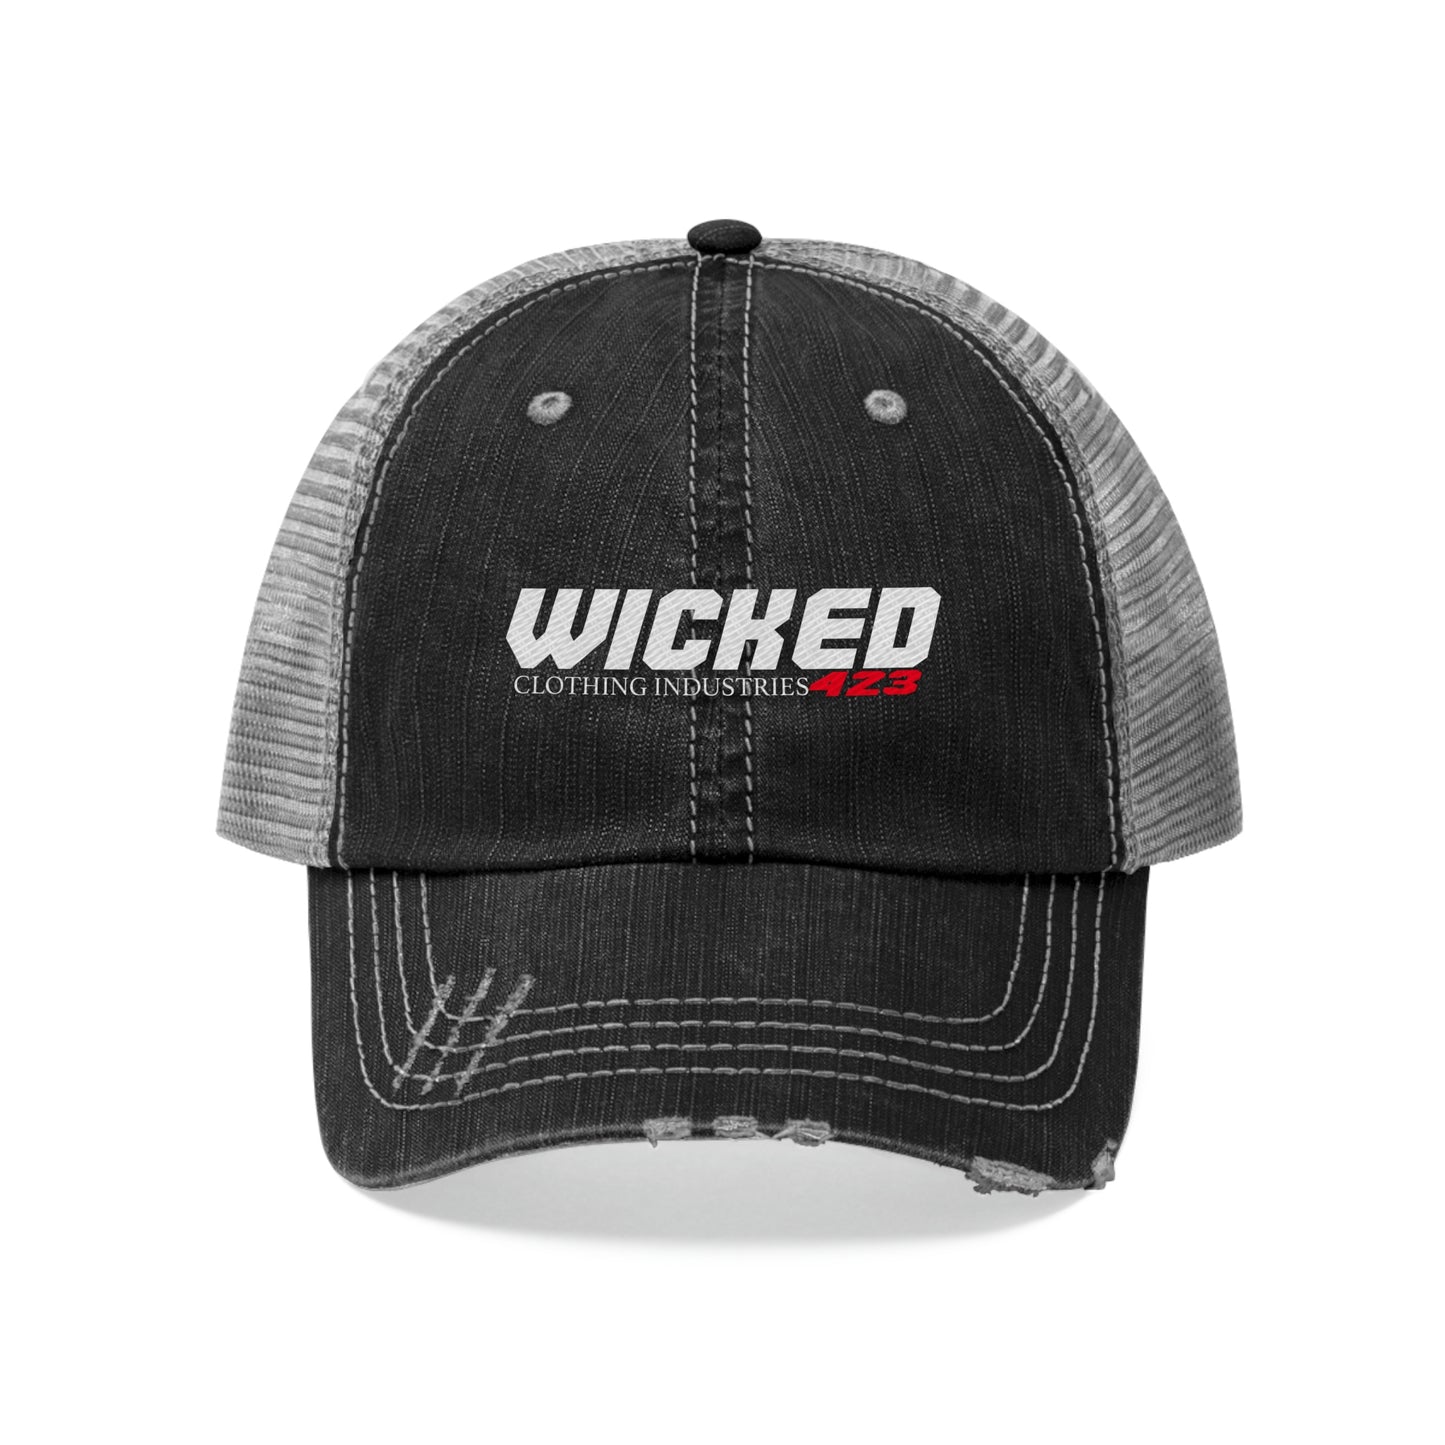 Wicked 423 Trucker Hat